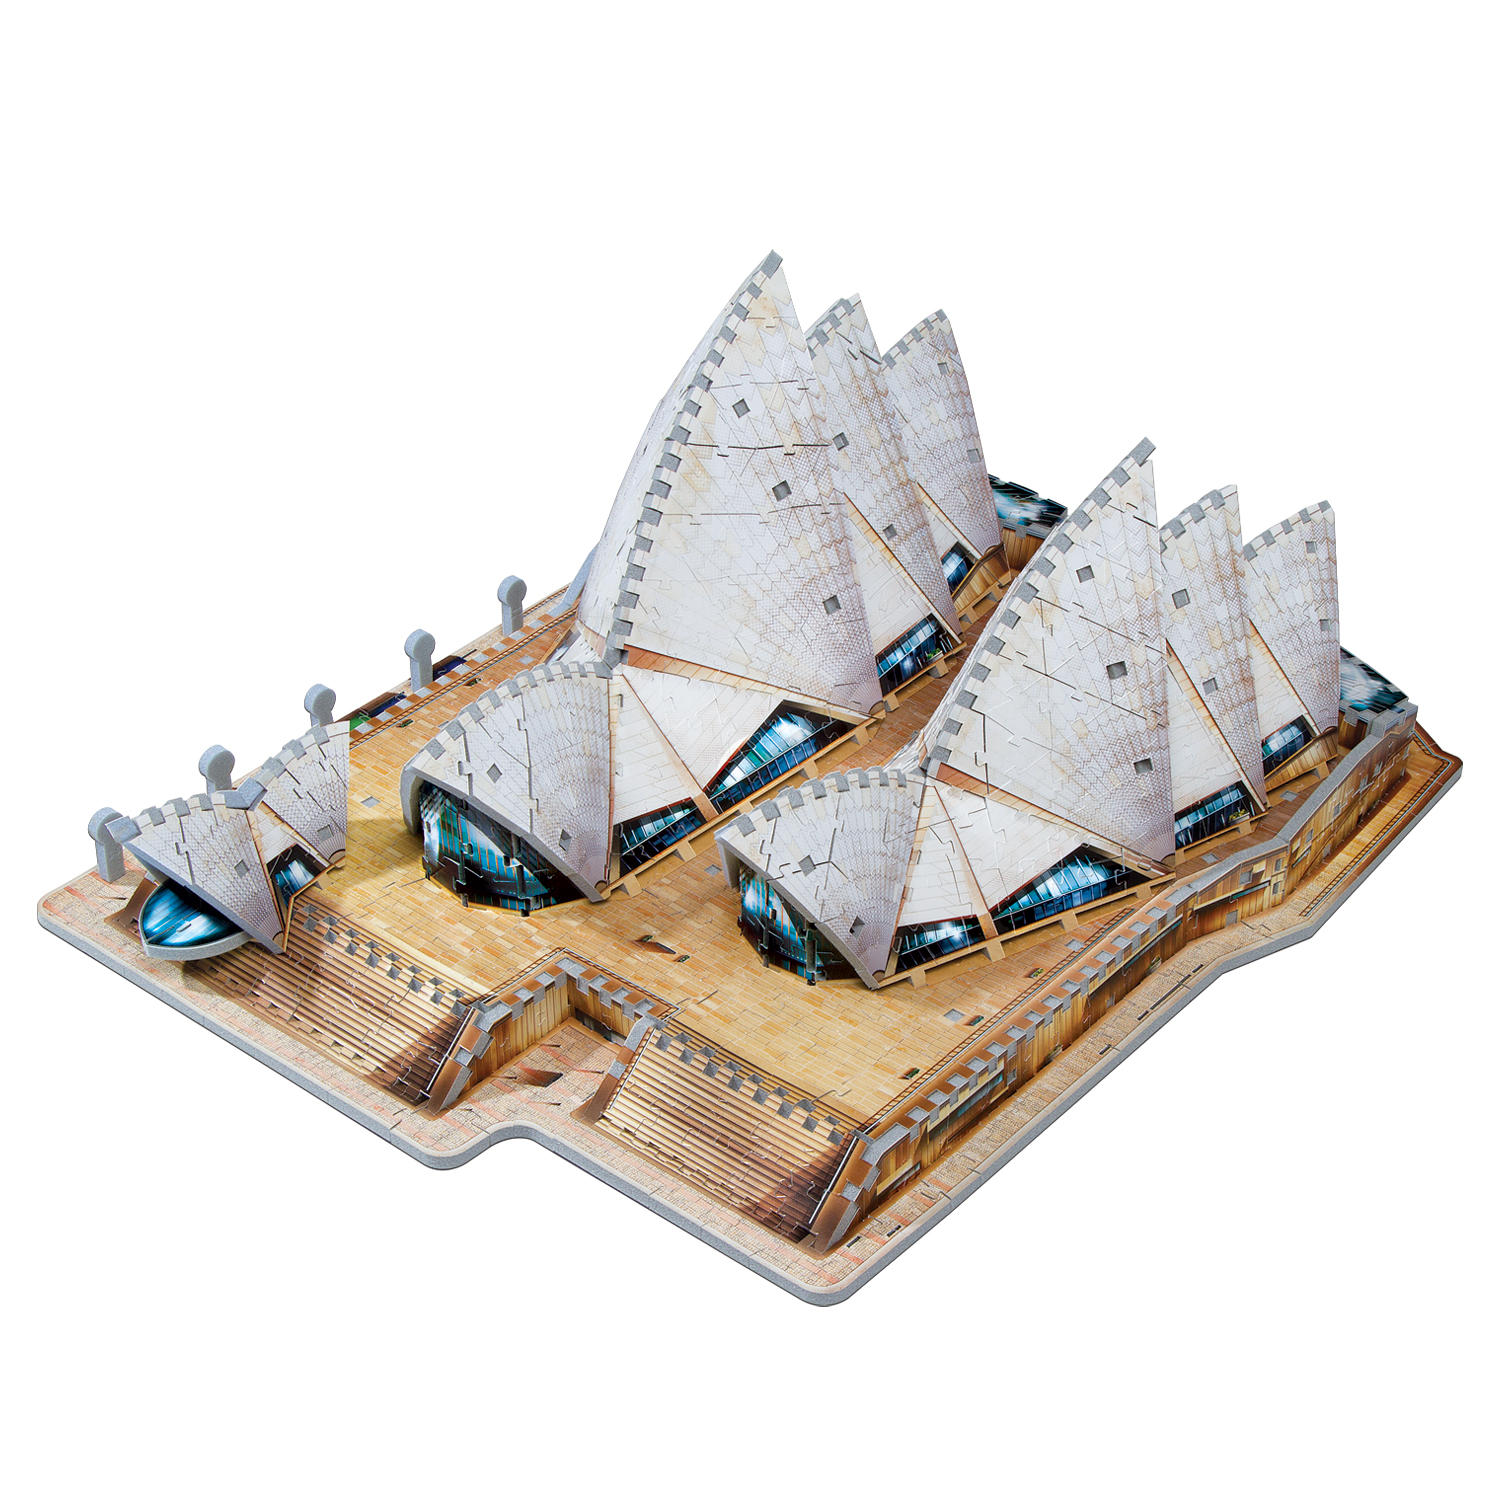 Sydney Oper Sidney Australien Weltall 3D Puzzle Metall Modell Laser Cut Bausatz 